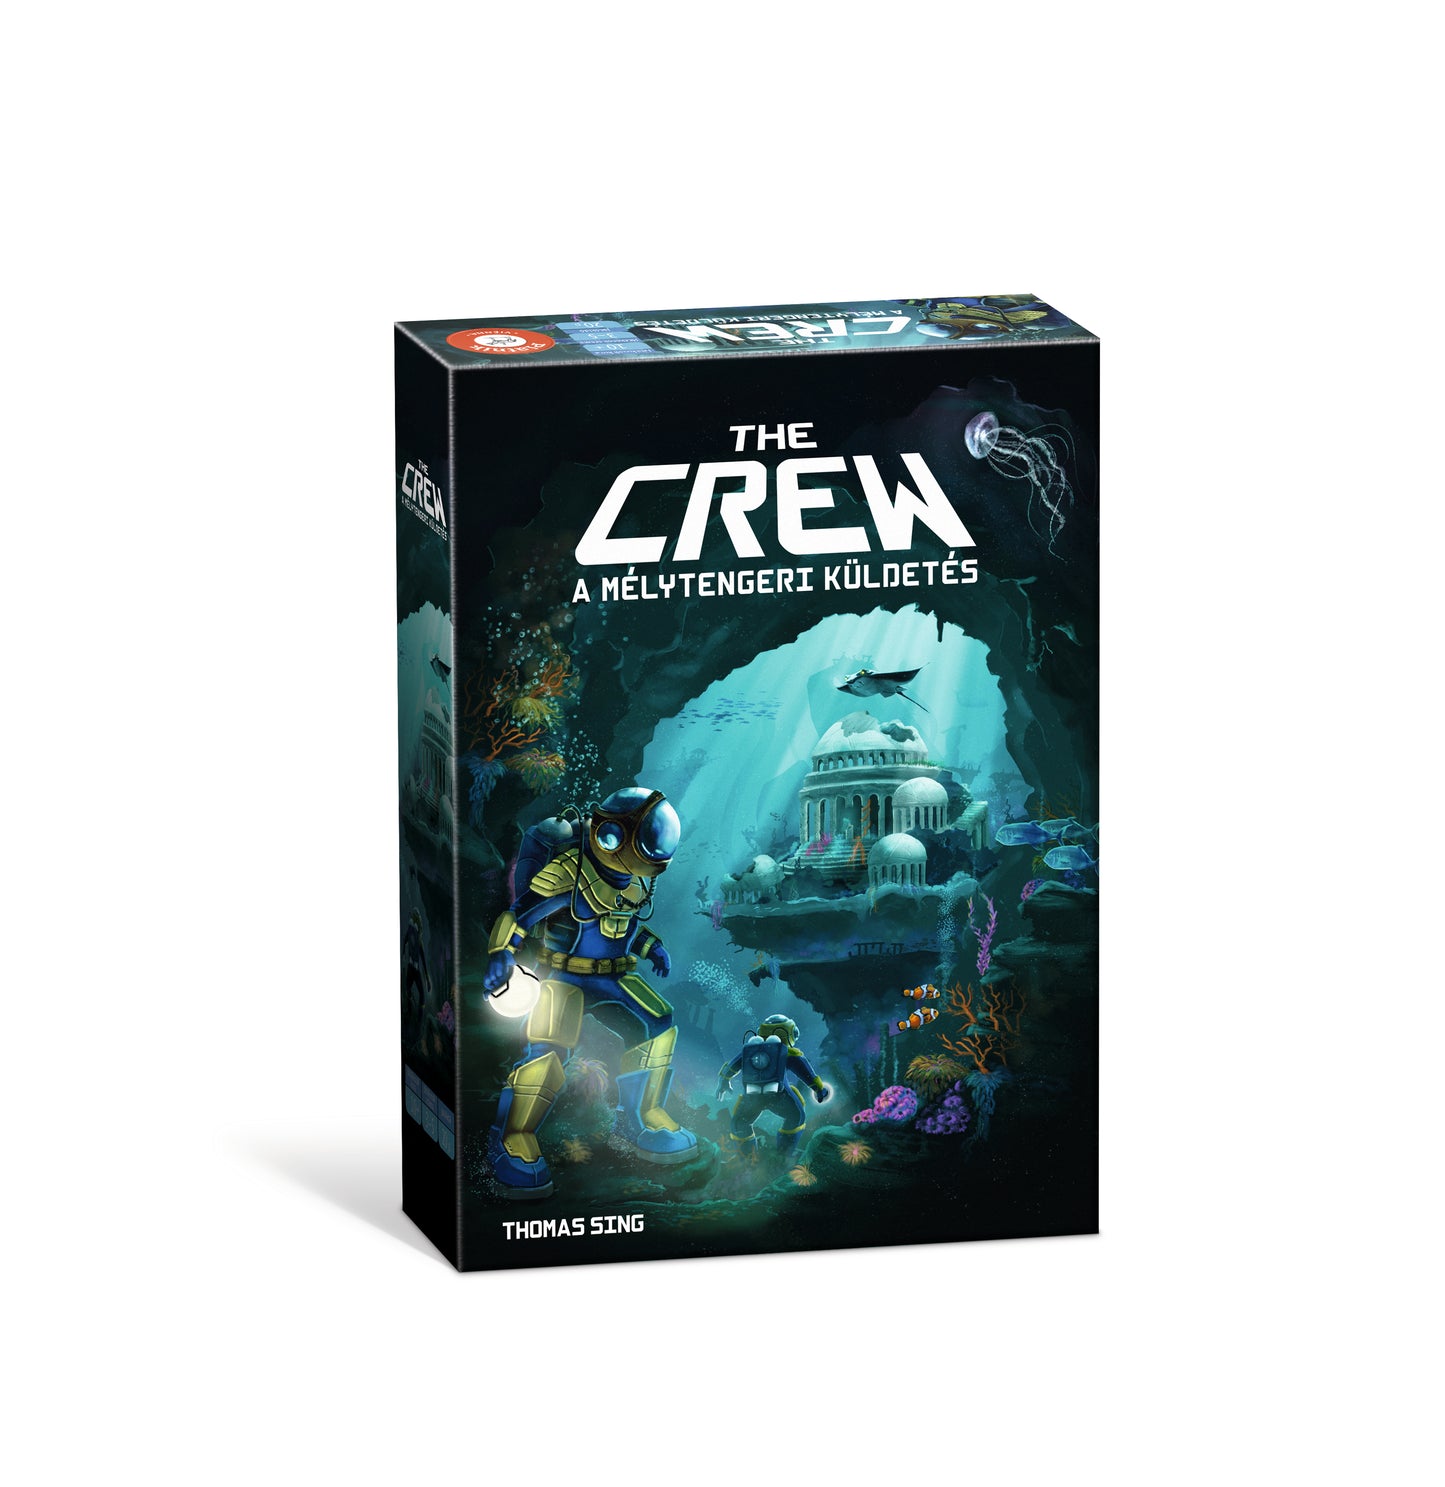 The Crew - A mélytengeri küldetés